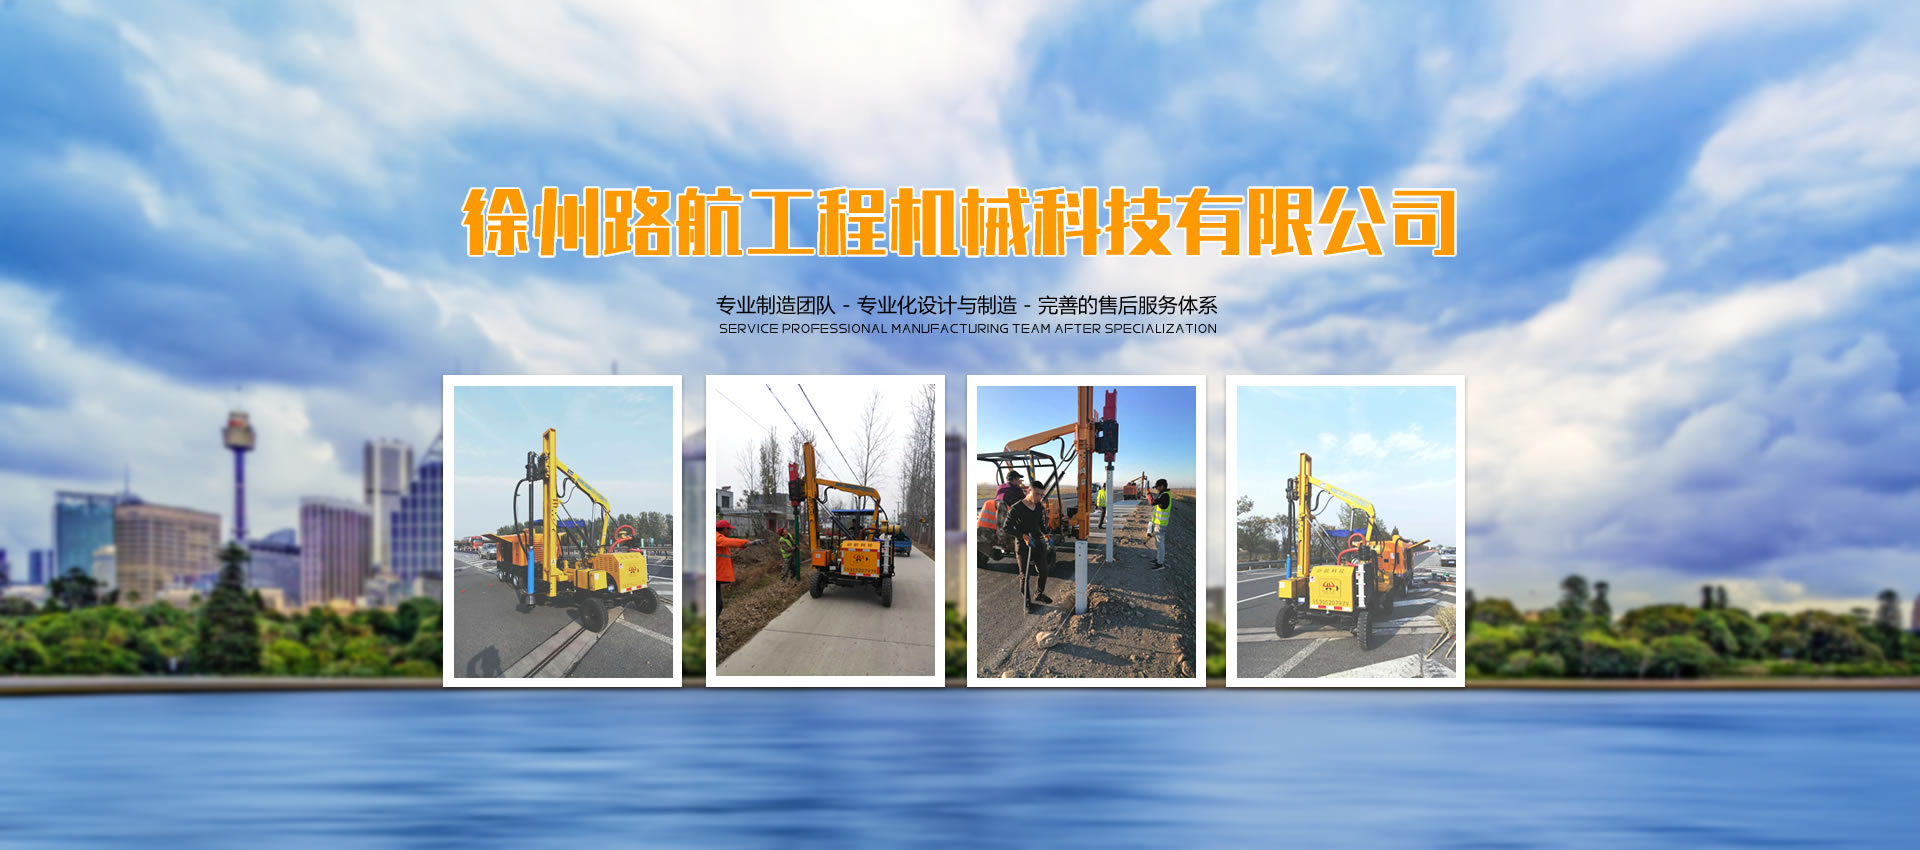 徐州路航工程機械科技有限公司 多年專注護欄打樁機研發與制造